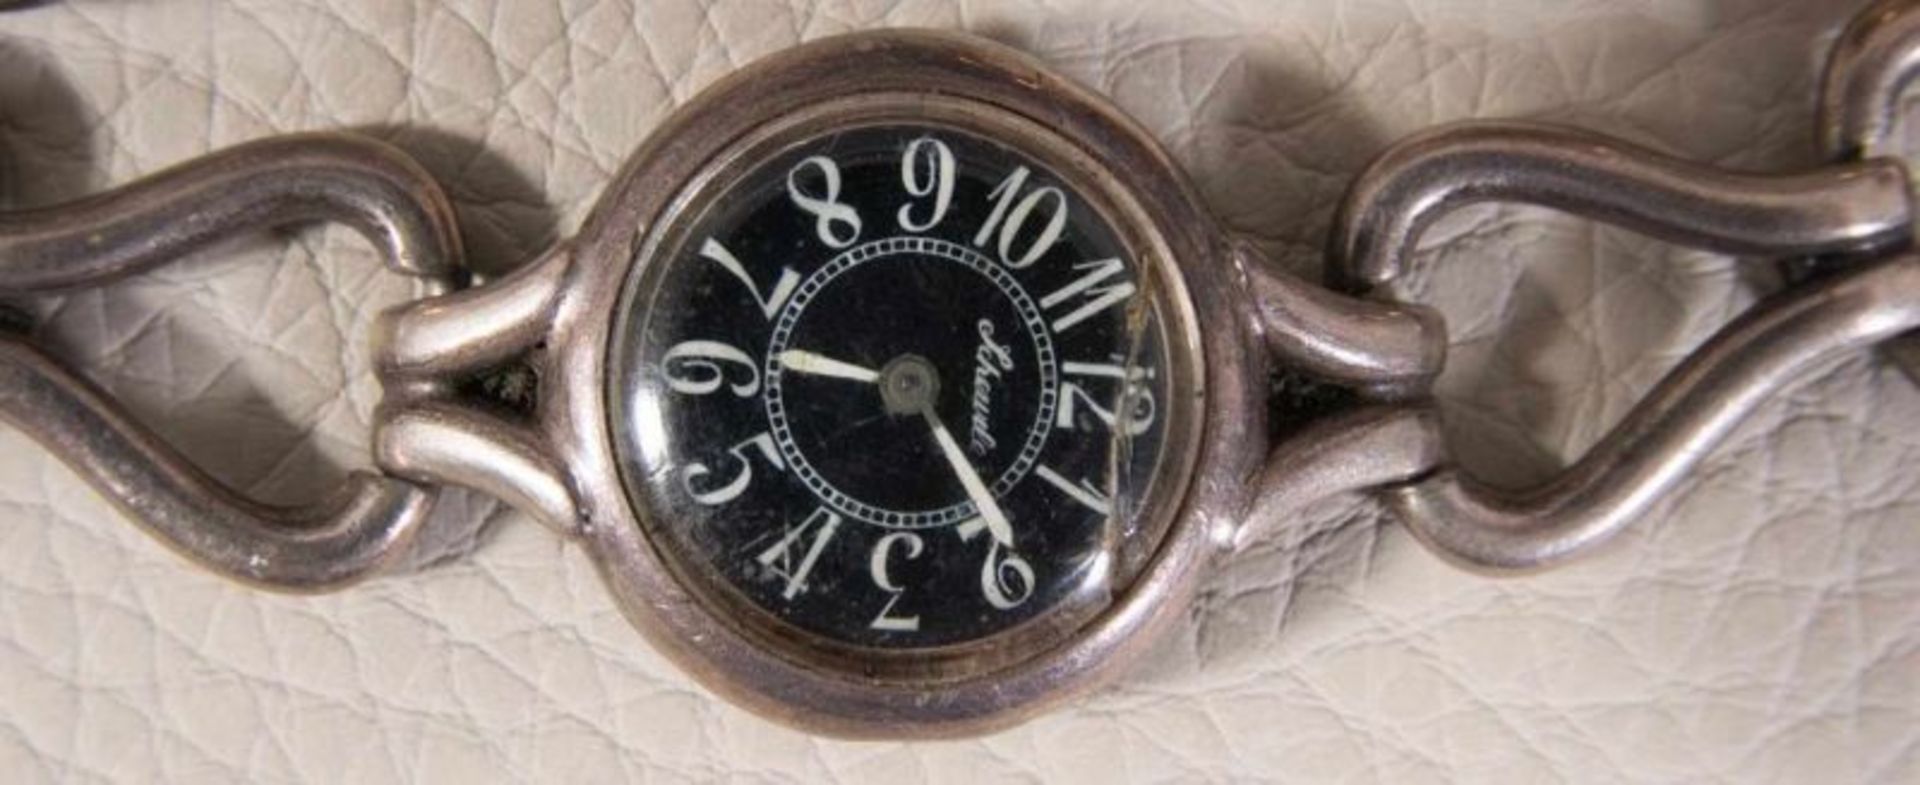 7teiliges Konvolut alter/antiker Uhren. Bestehend aus 4 Armband- & 3 Taschenuhren. Teilweise Silber. - Image 2 of 14